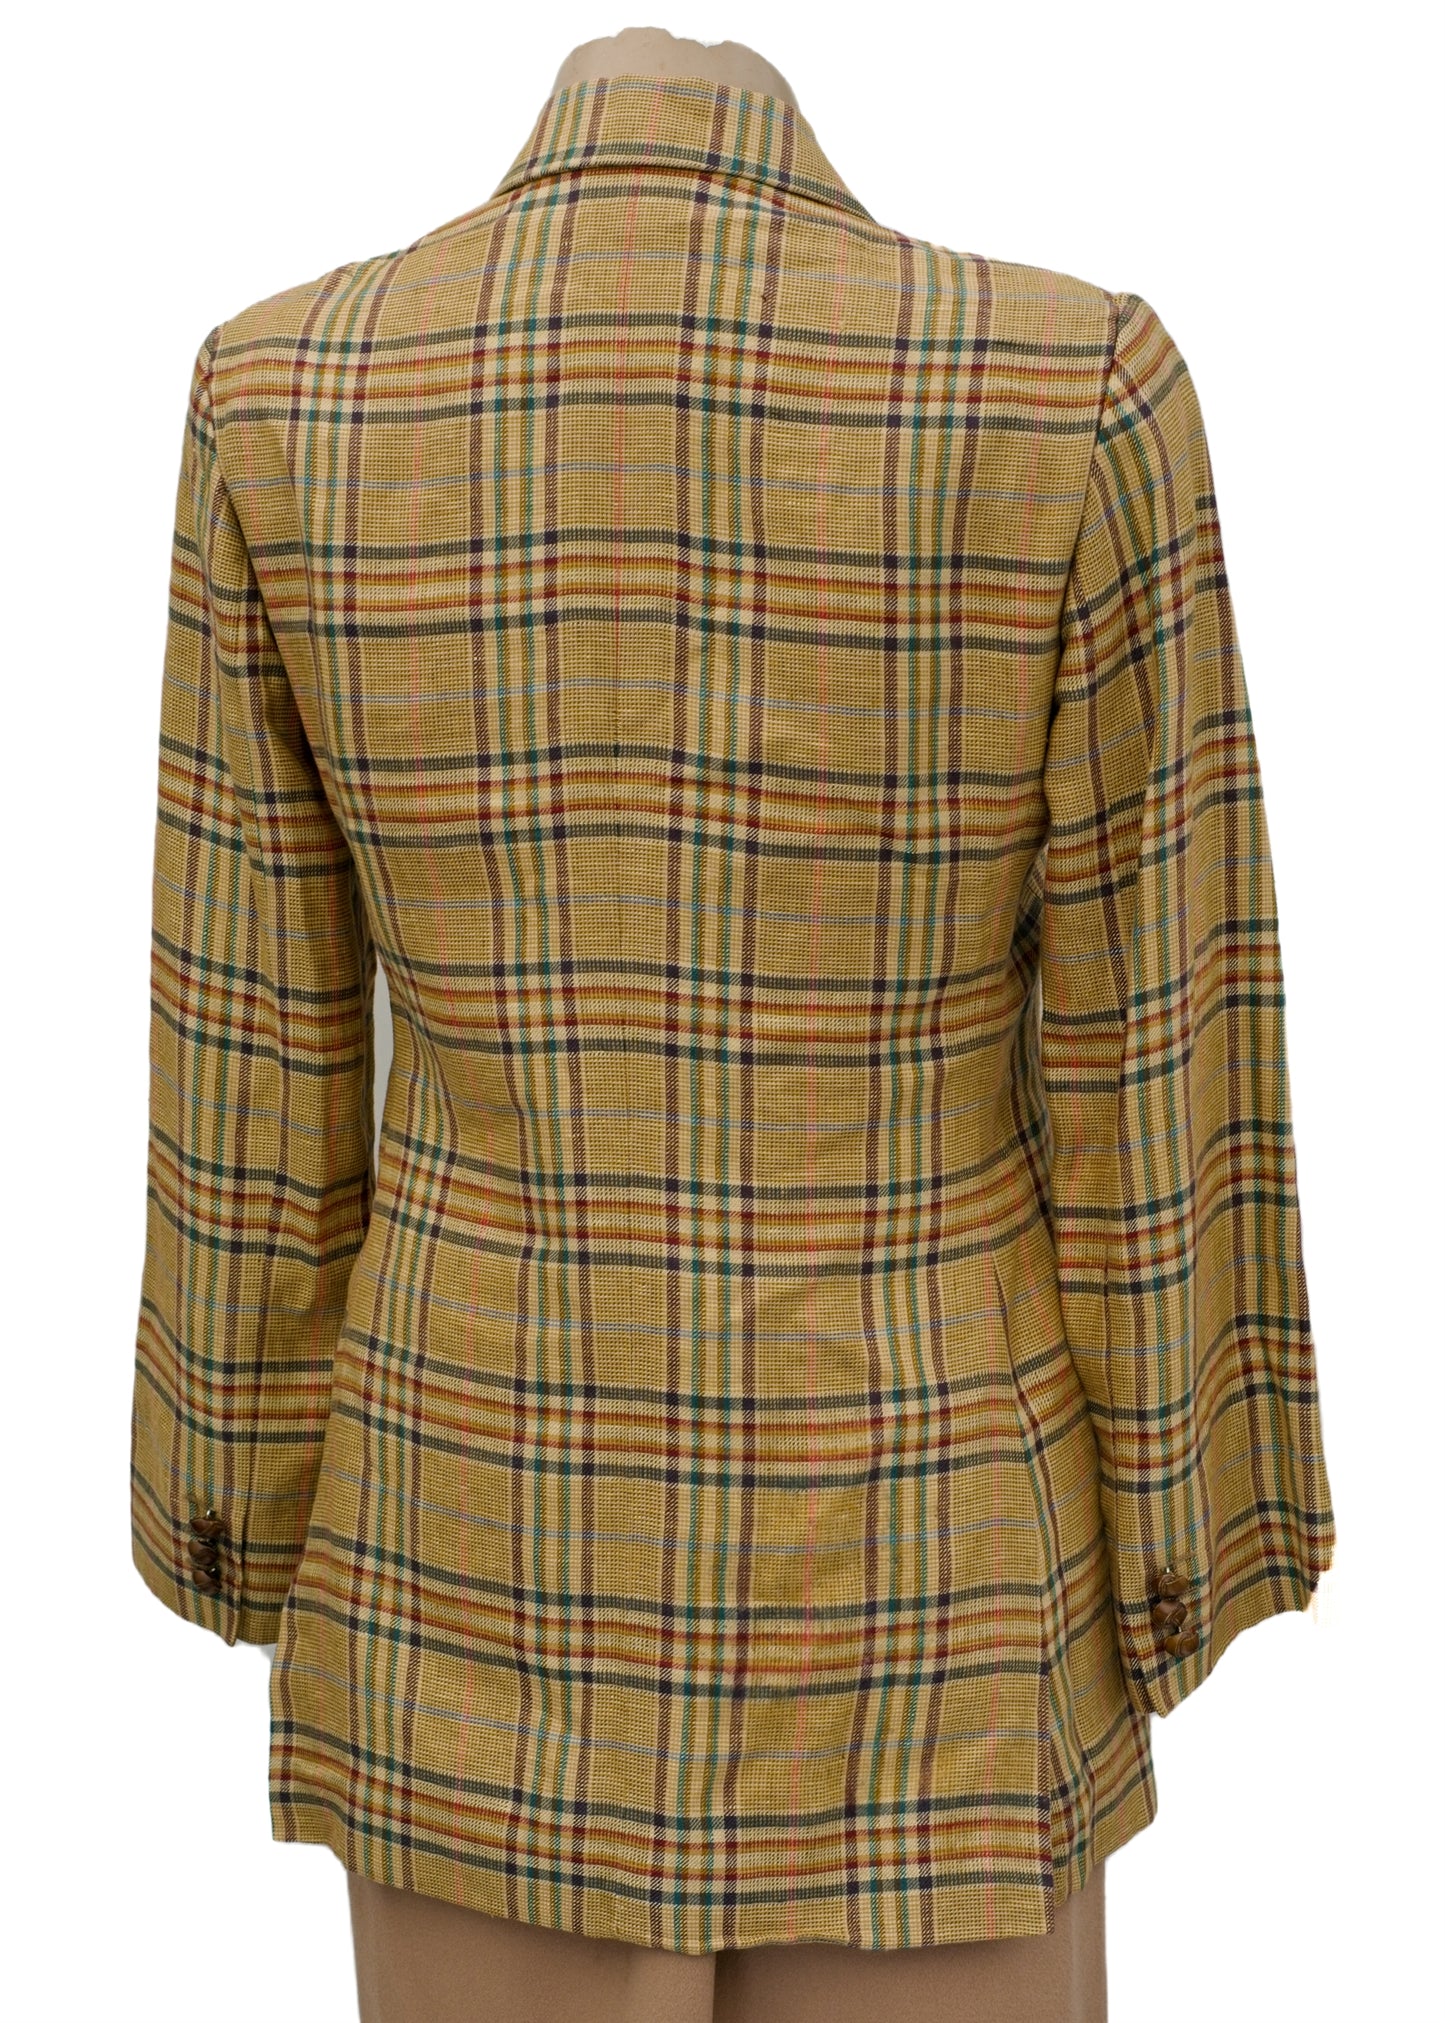 Women's Linen Hacking Jacket • Size 12 • DAKS